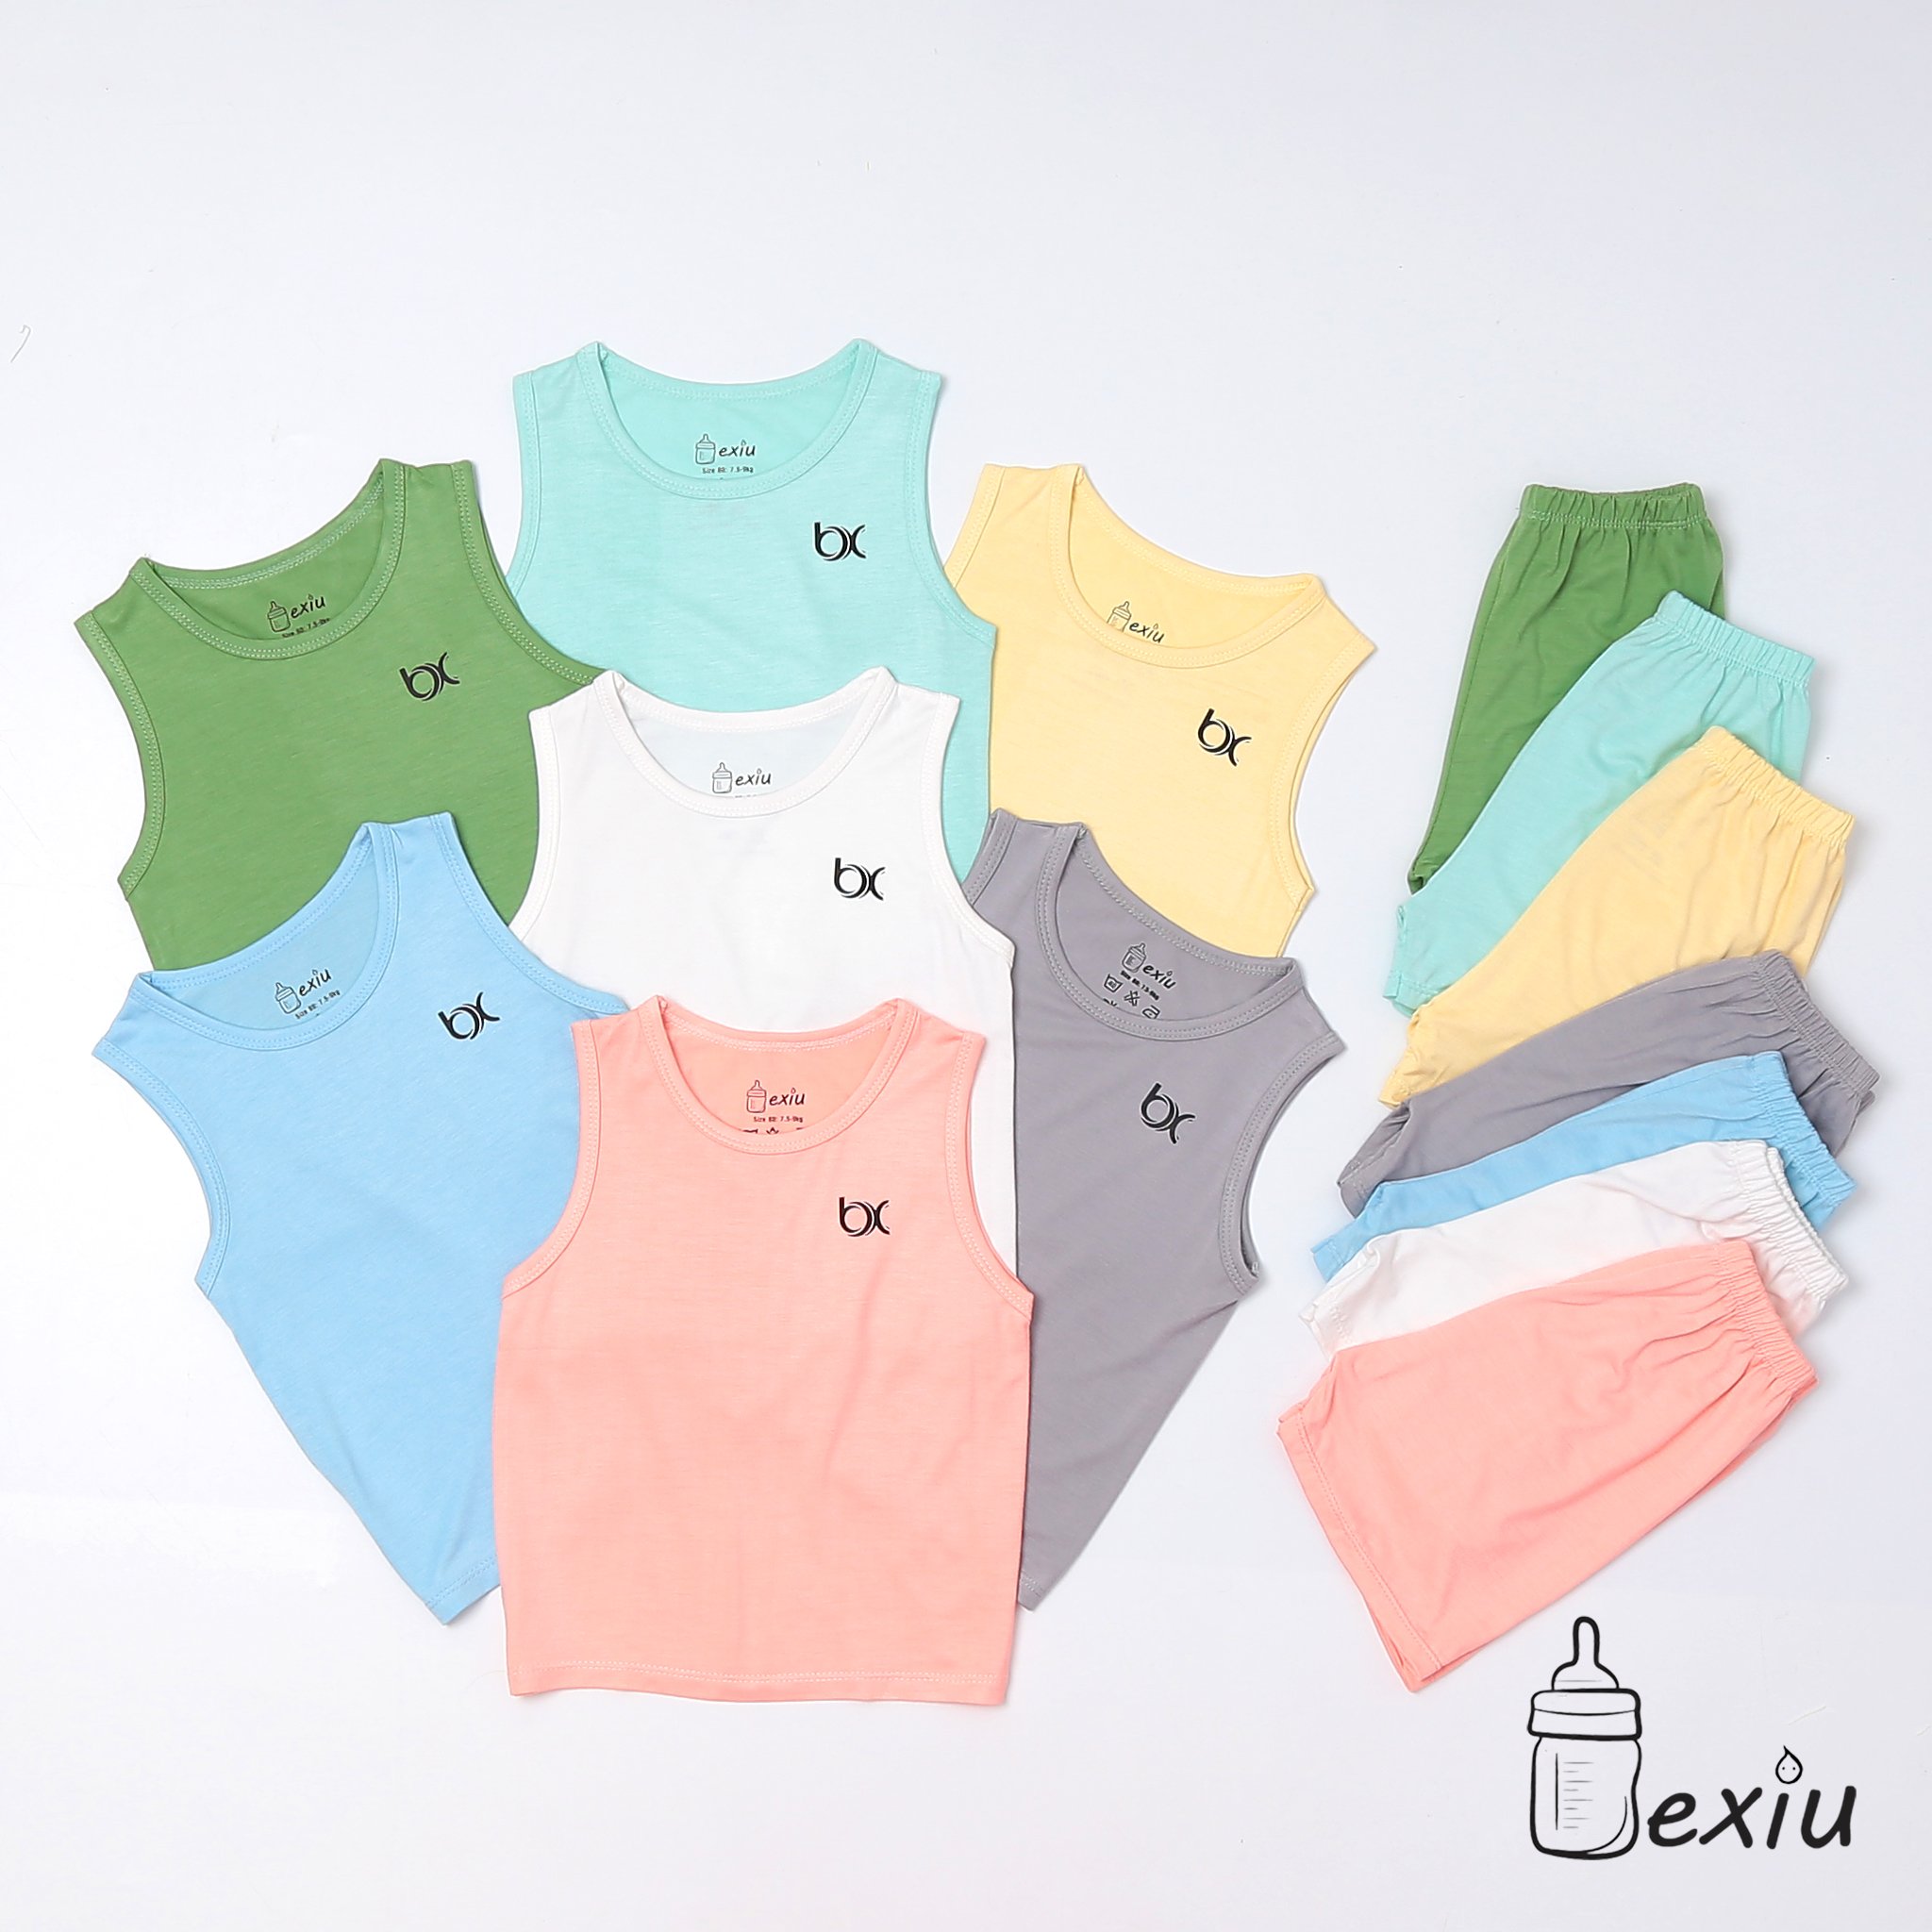 Hcmbộ ba lỗ màu bexiu bx - quần áo trẻ sơ sinh vải cotton lạnh mát mềm - ảnh sản phẩm 9